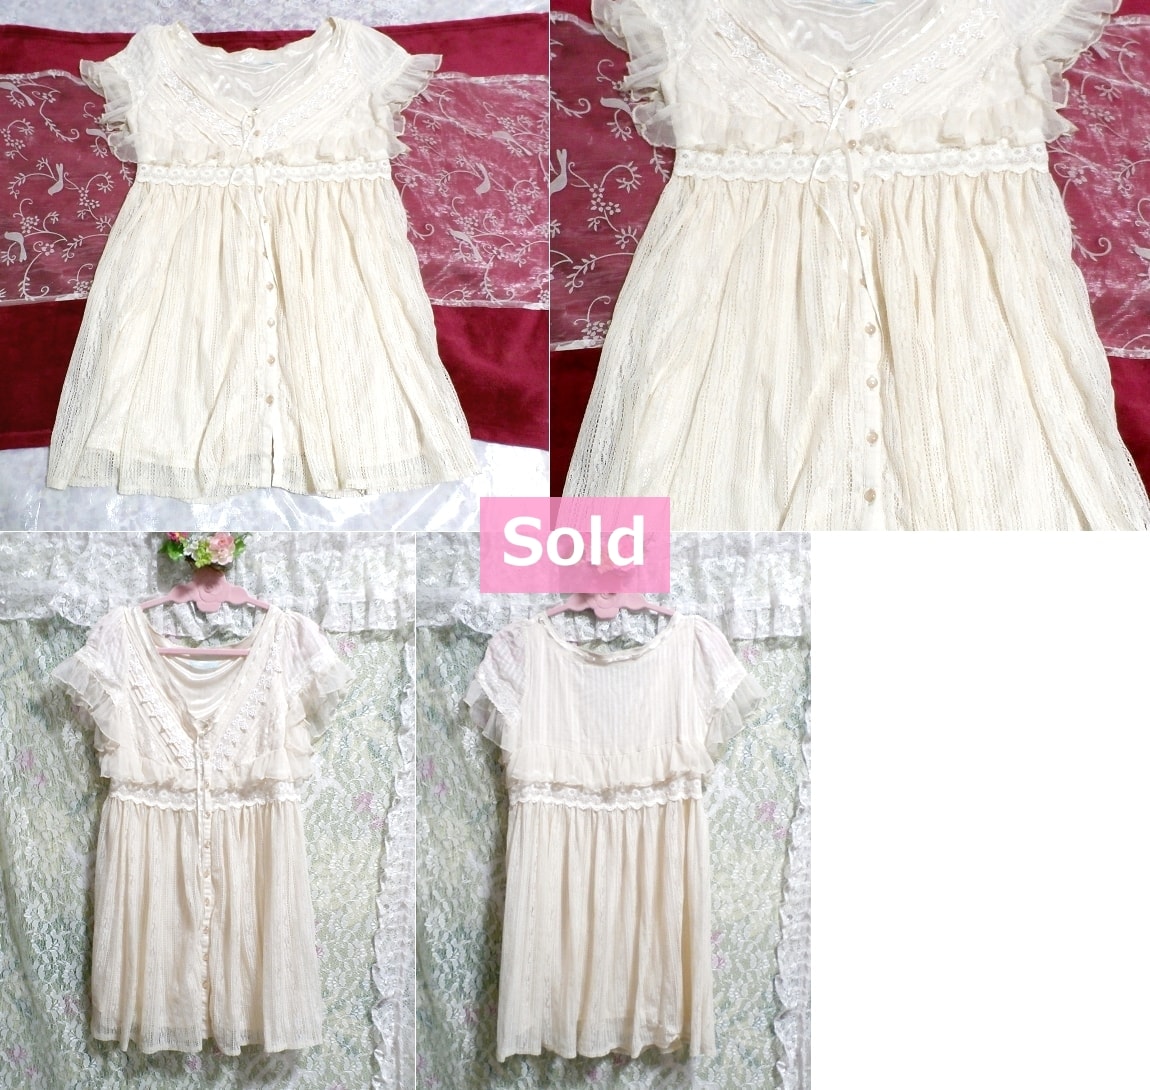 الأبيض الأبيض جرلي الدانتيل رداء ثوب النوم تونك اللباس, حسب العلامة التجارية, تاتشيتسو, مبهر